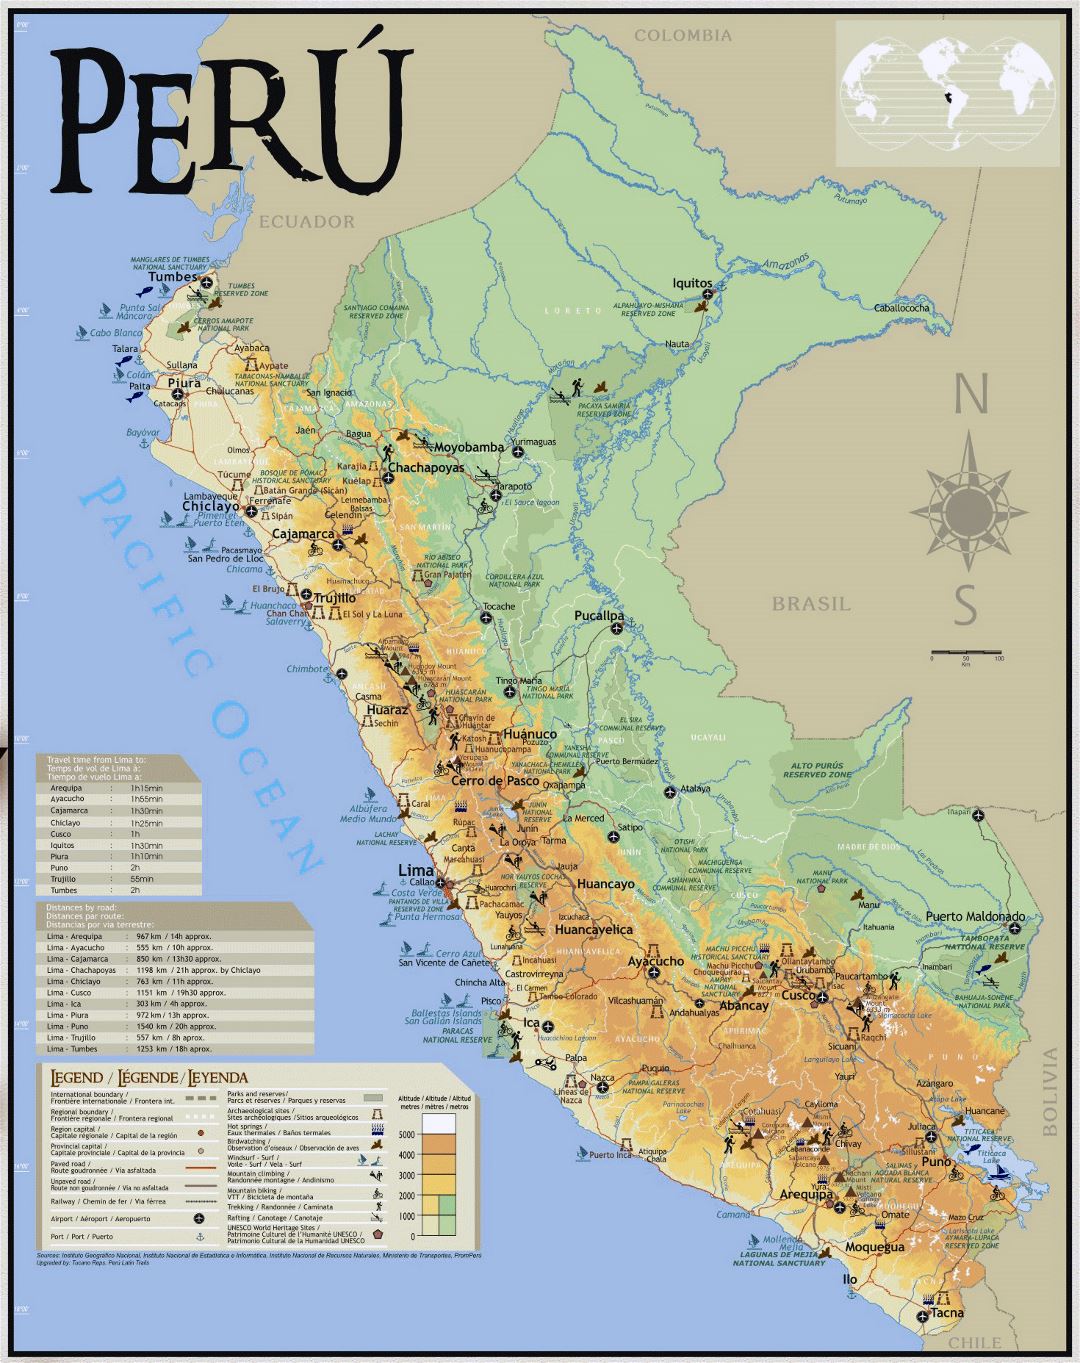 Large tourist map of Peru